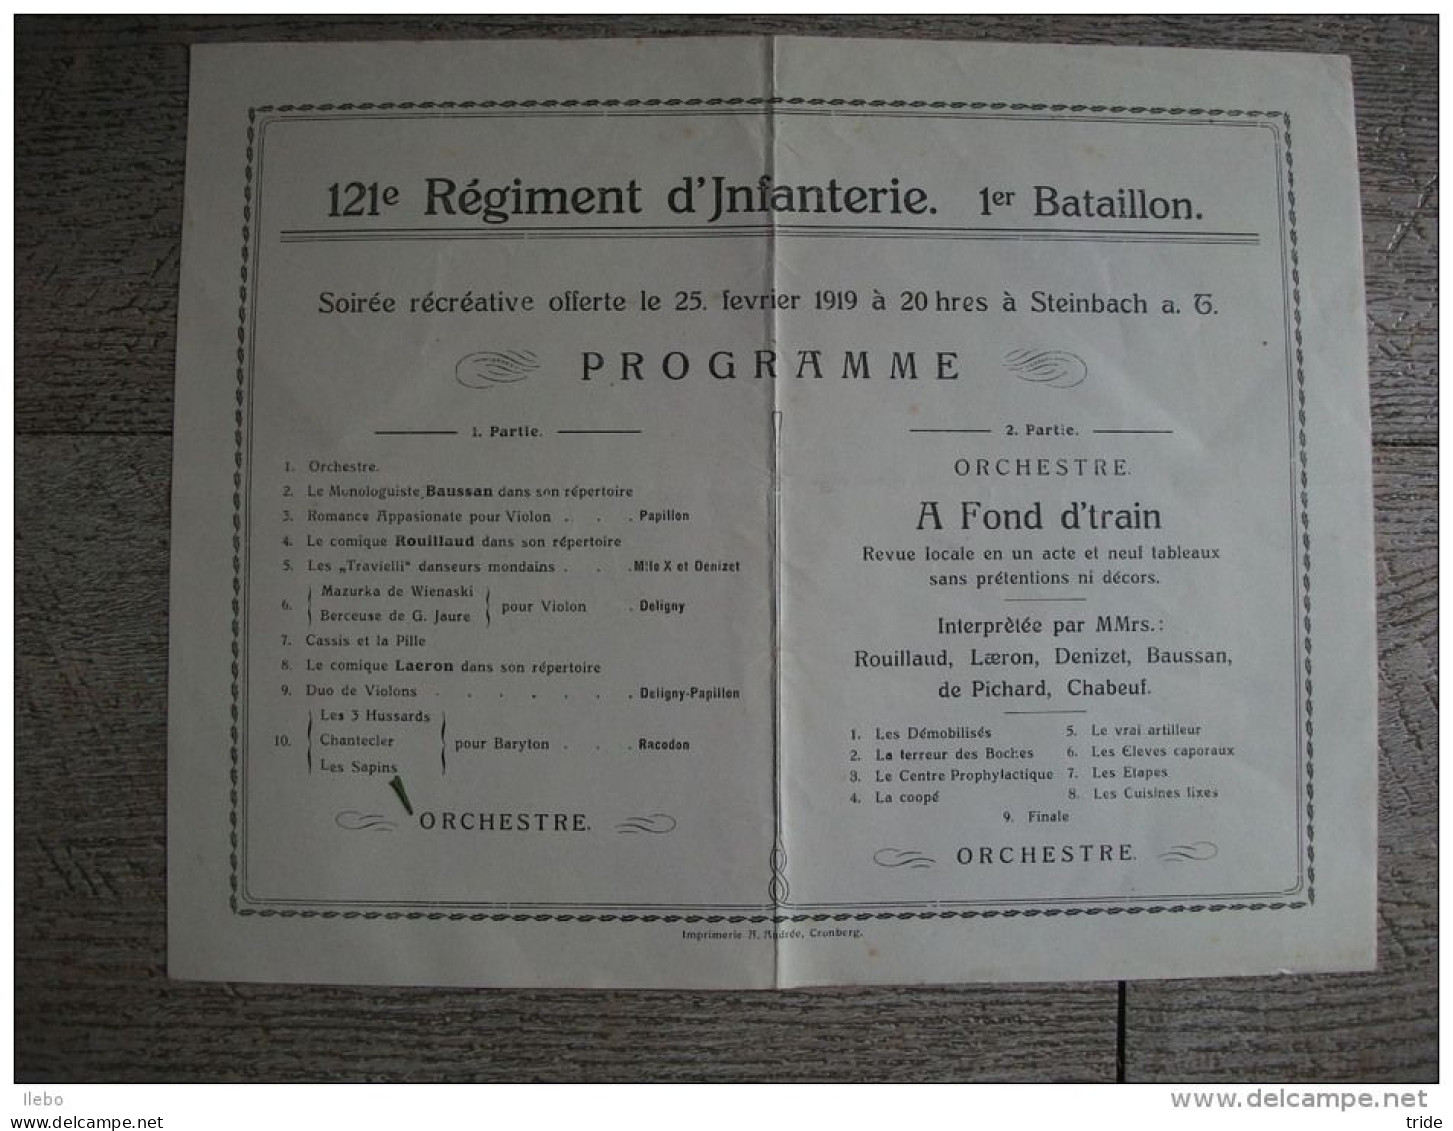 Programme 121 Régiment Infanterie 1 Bataillon 1919 Steinbach Militaire Orchestre - Programs